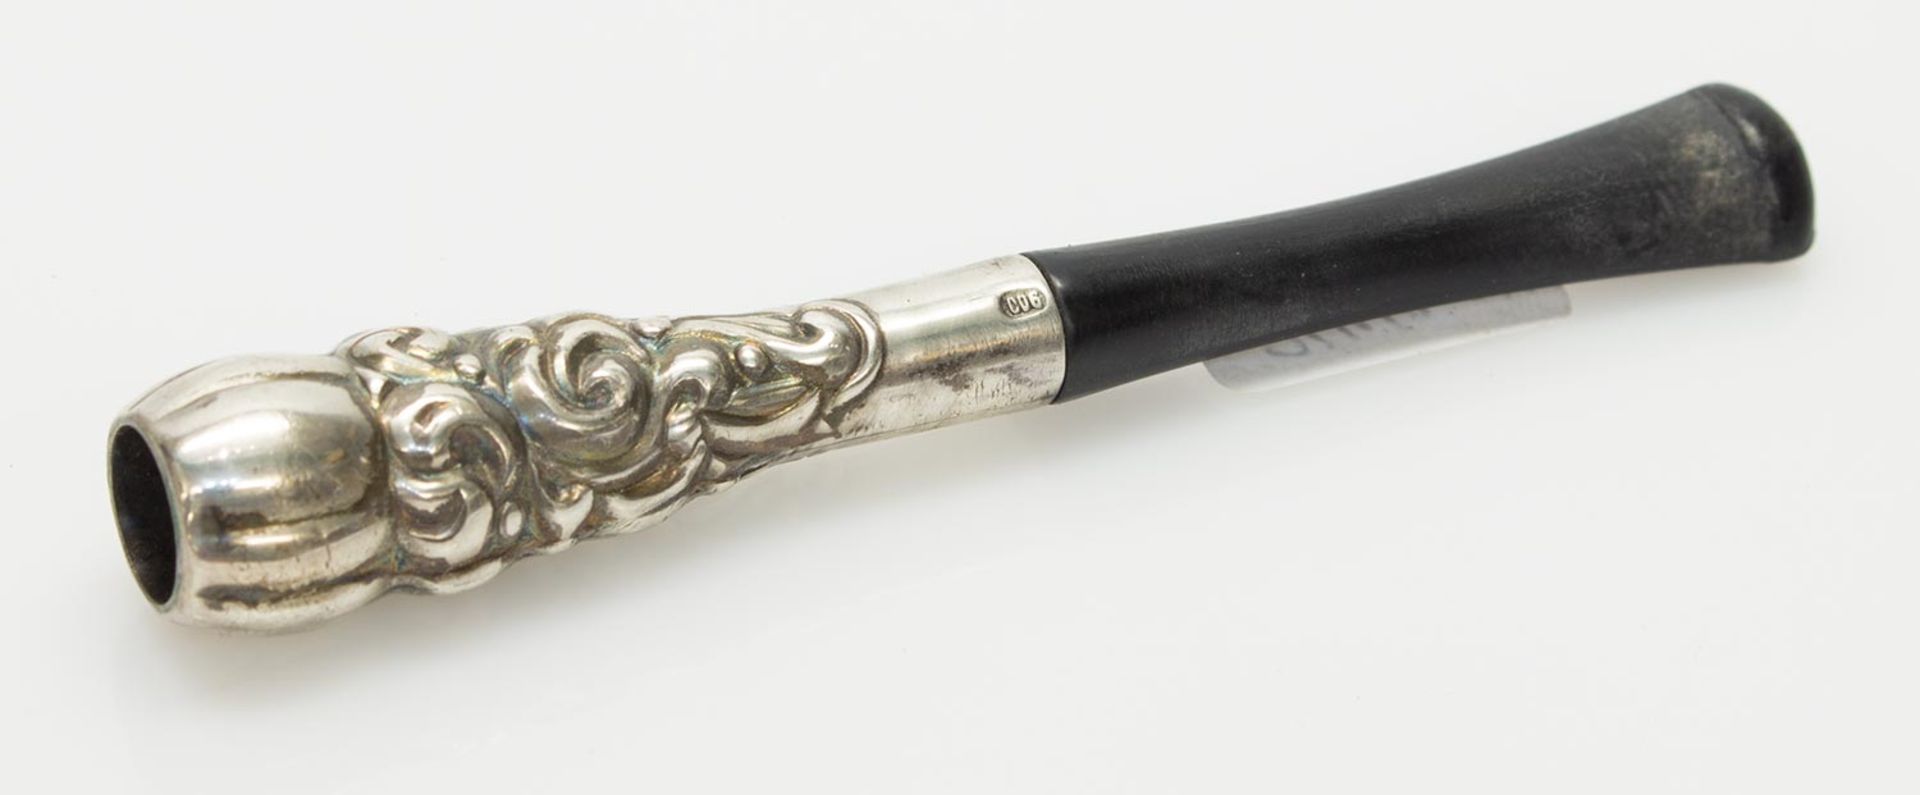 Zigarettenspitzeum 1900, 900er Silber mit schwarzem Mundstück, L. 9 cm